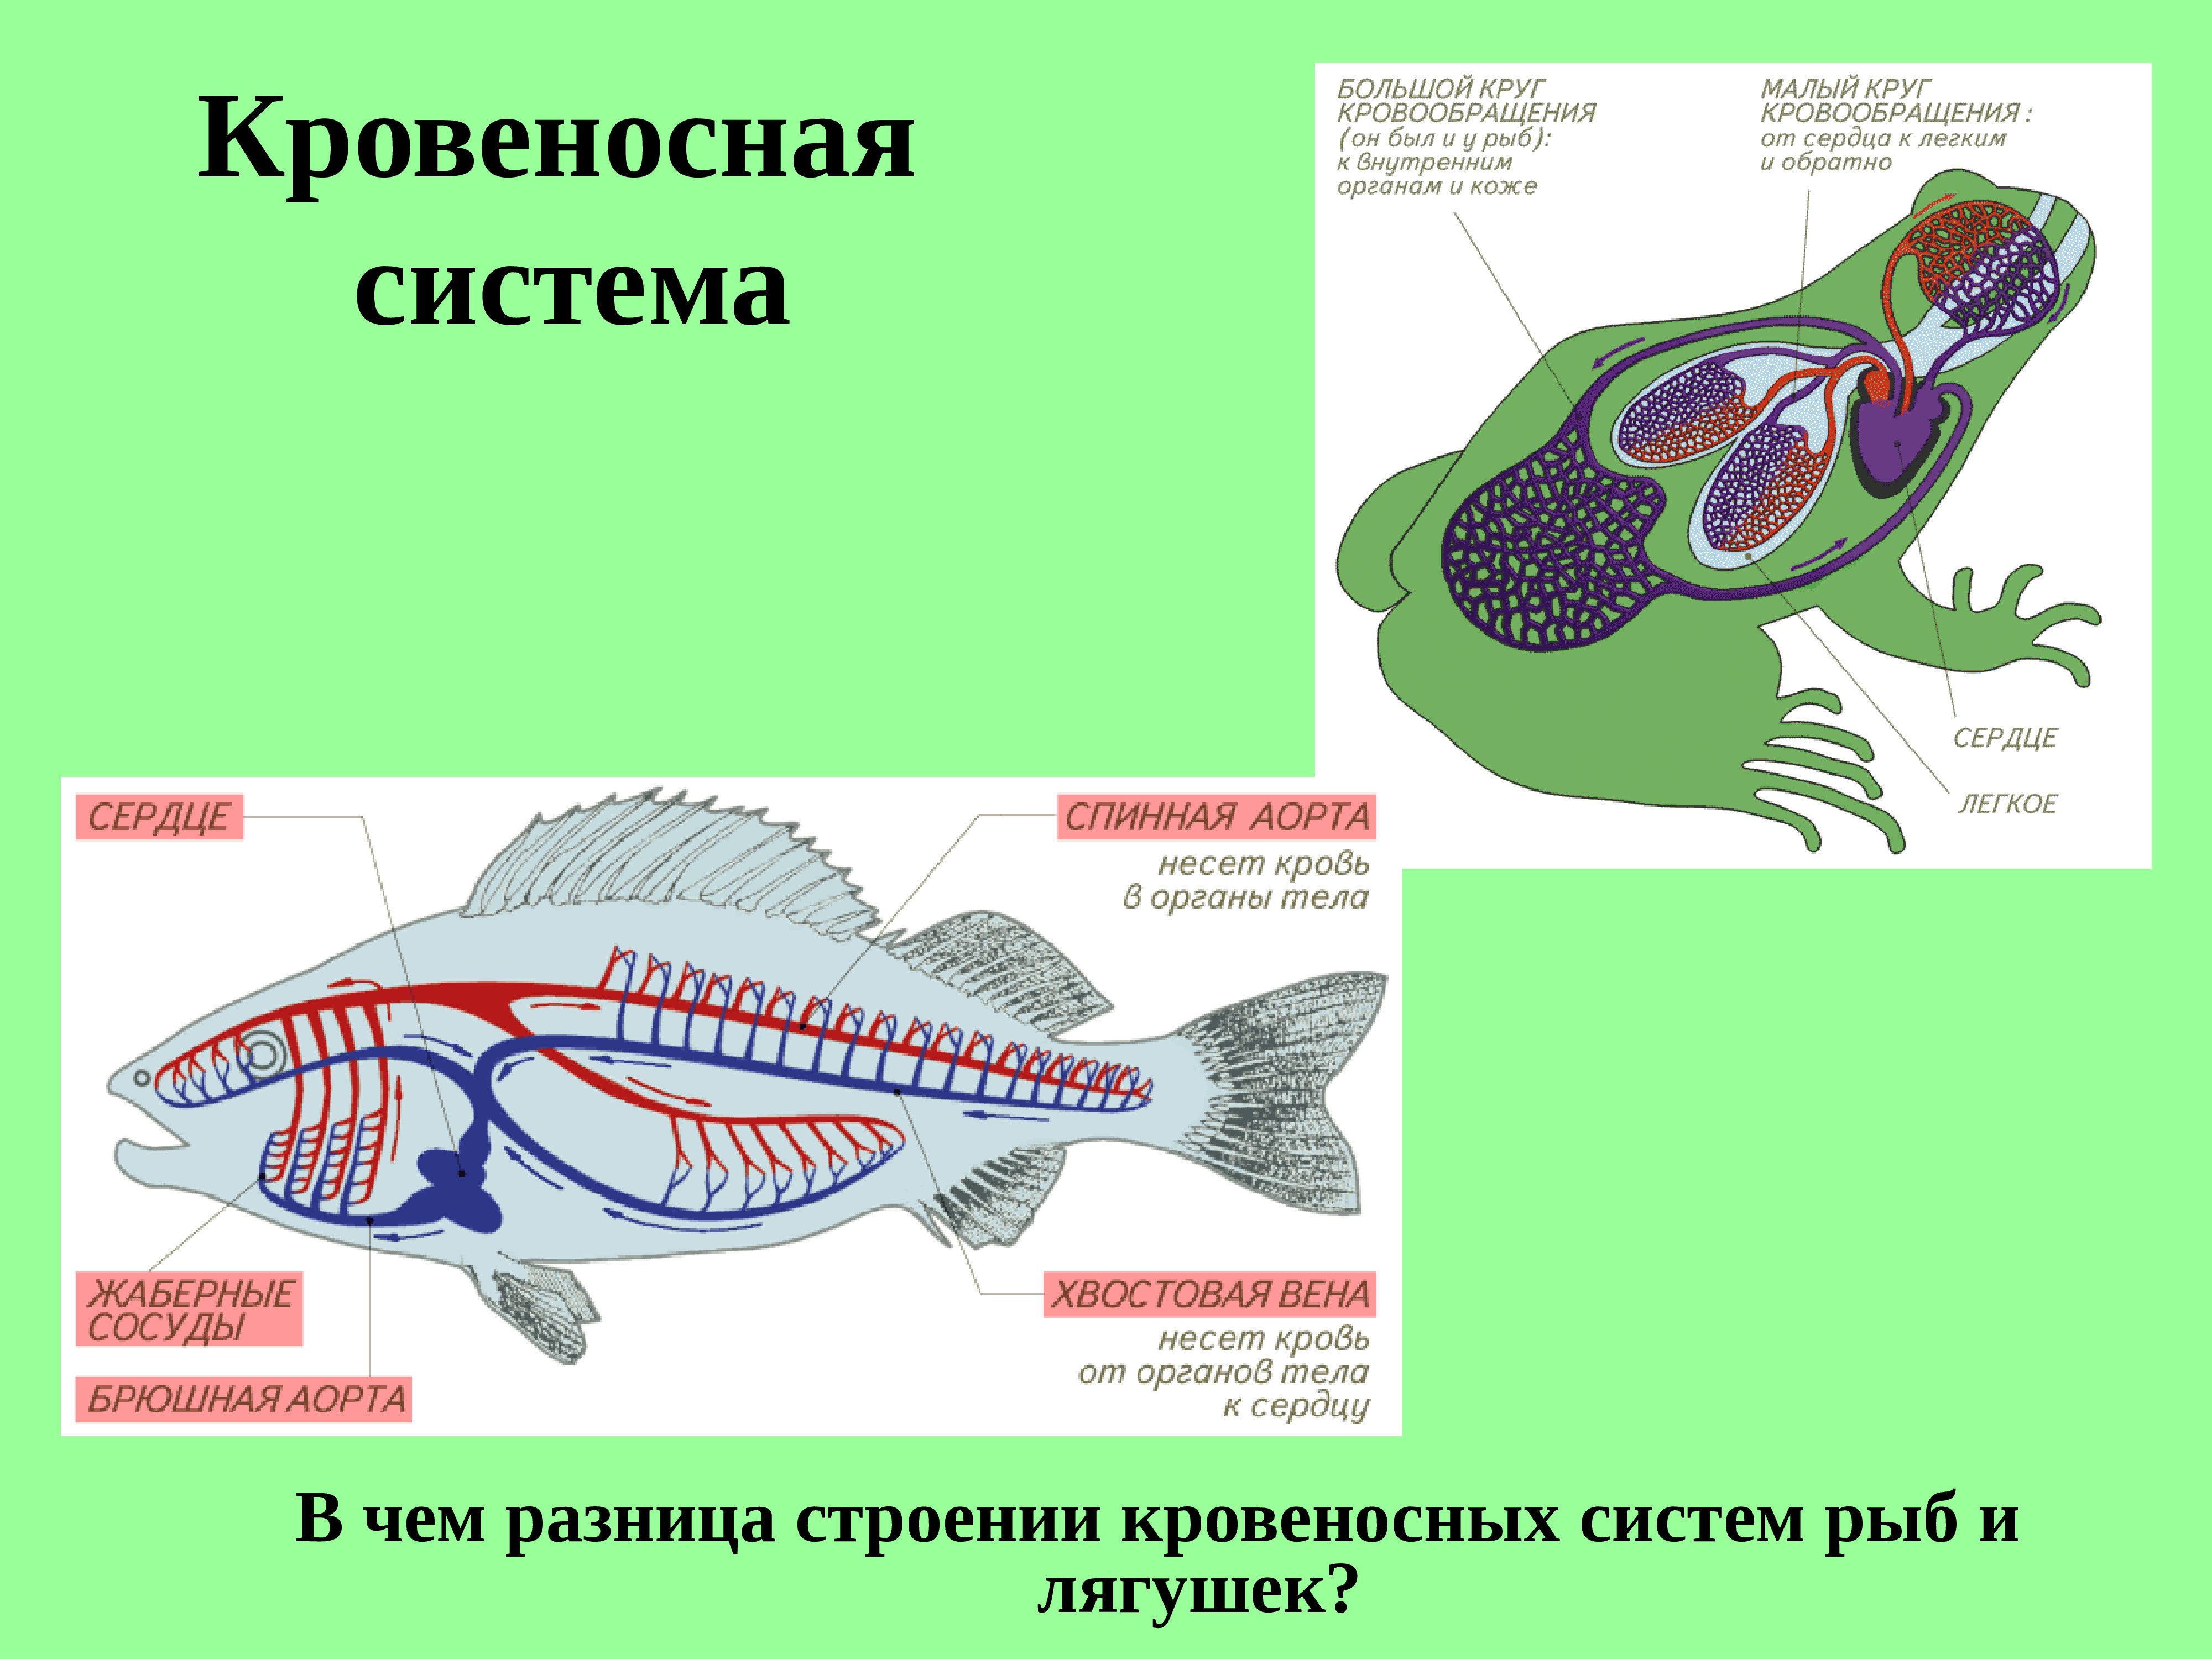 Кровеносная органы рыб. Внутреннее строение рыбы кровеносная система. Внутреннее строение лягушки. Строение кровеносной системы рыб. Кровеносная система лягушки.